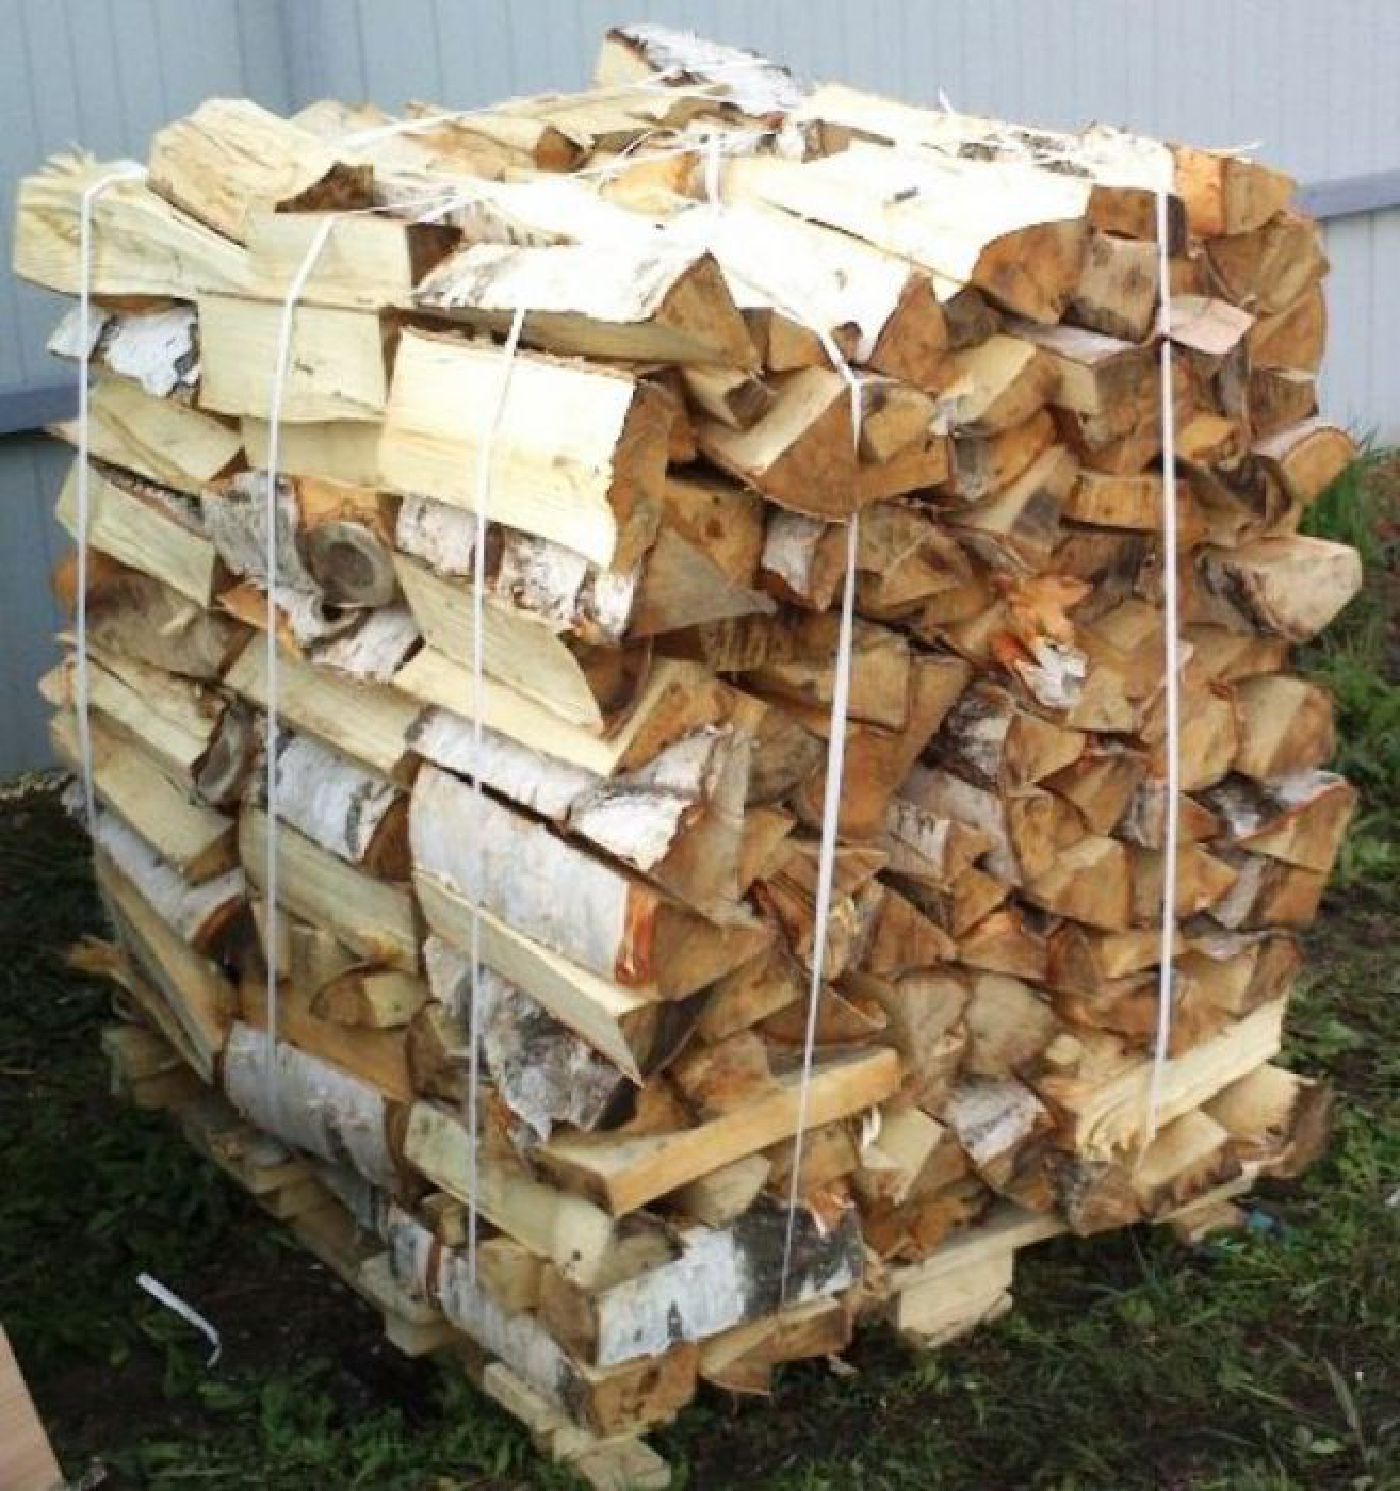 1 куб колотых дров. 1 М3 дров. 1м3 березовых колотых дров в Максатиха. 5 М3 дров. Куб дров.